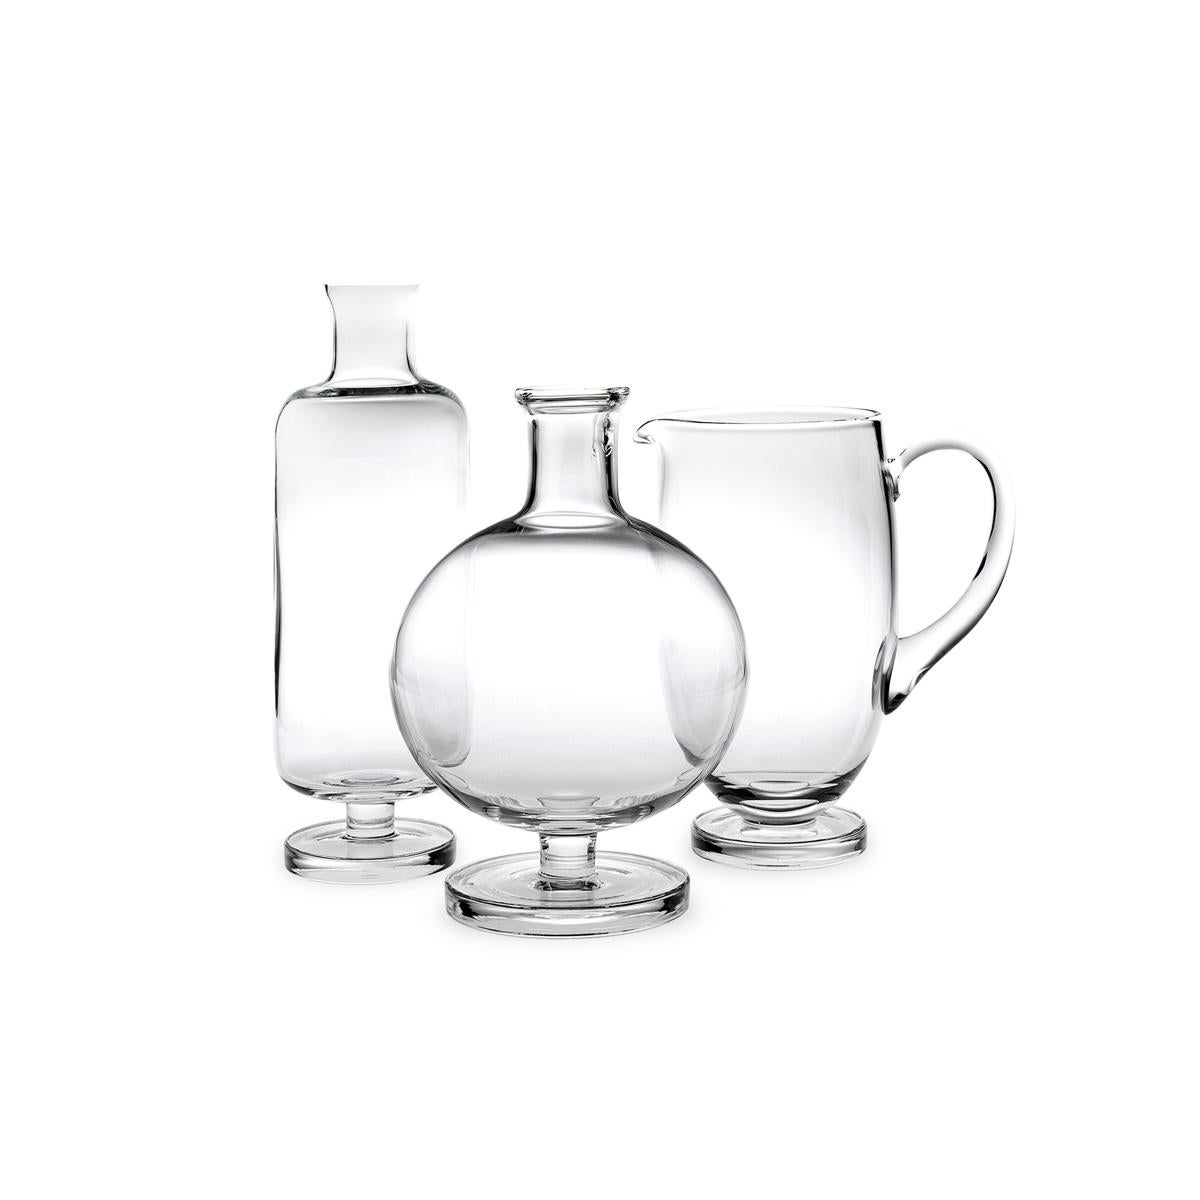 Flasche aus geblasenem Glas in einer Form. Die Tulip-Kollektion ist eine Glaswarenfamilie von Aldo Cibic, der diese Stücke auf der Grenze zwischen klassischem und postmodernem Design entworfen hat. Die kühn-schlichten geometrischen Formen sind